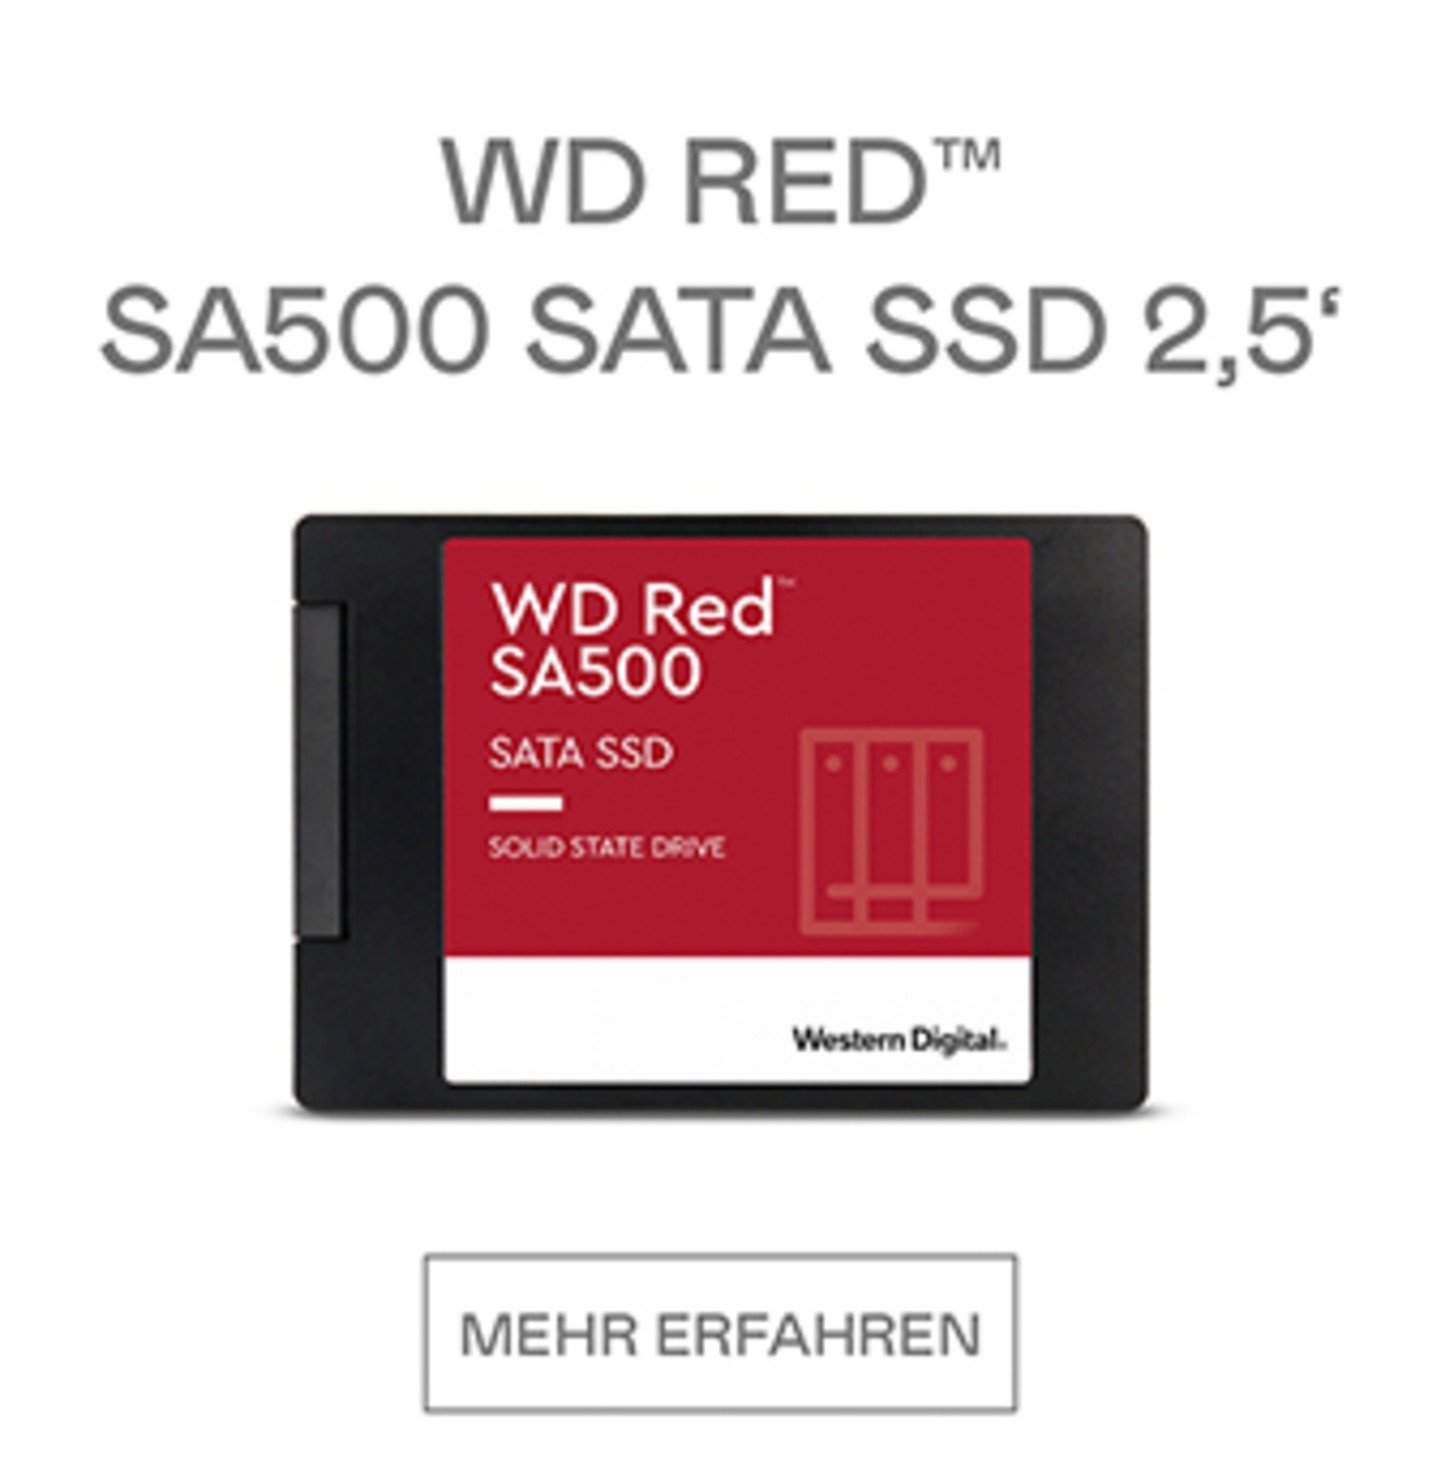 WD RED SA500 SATA SSD 2,5